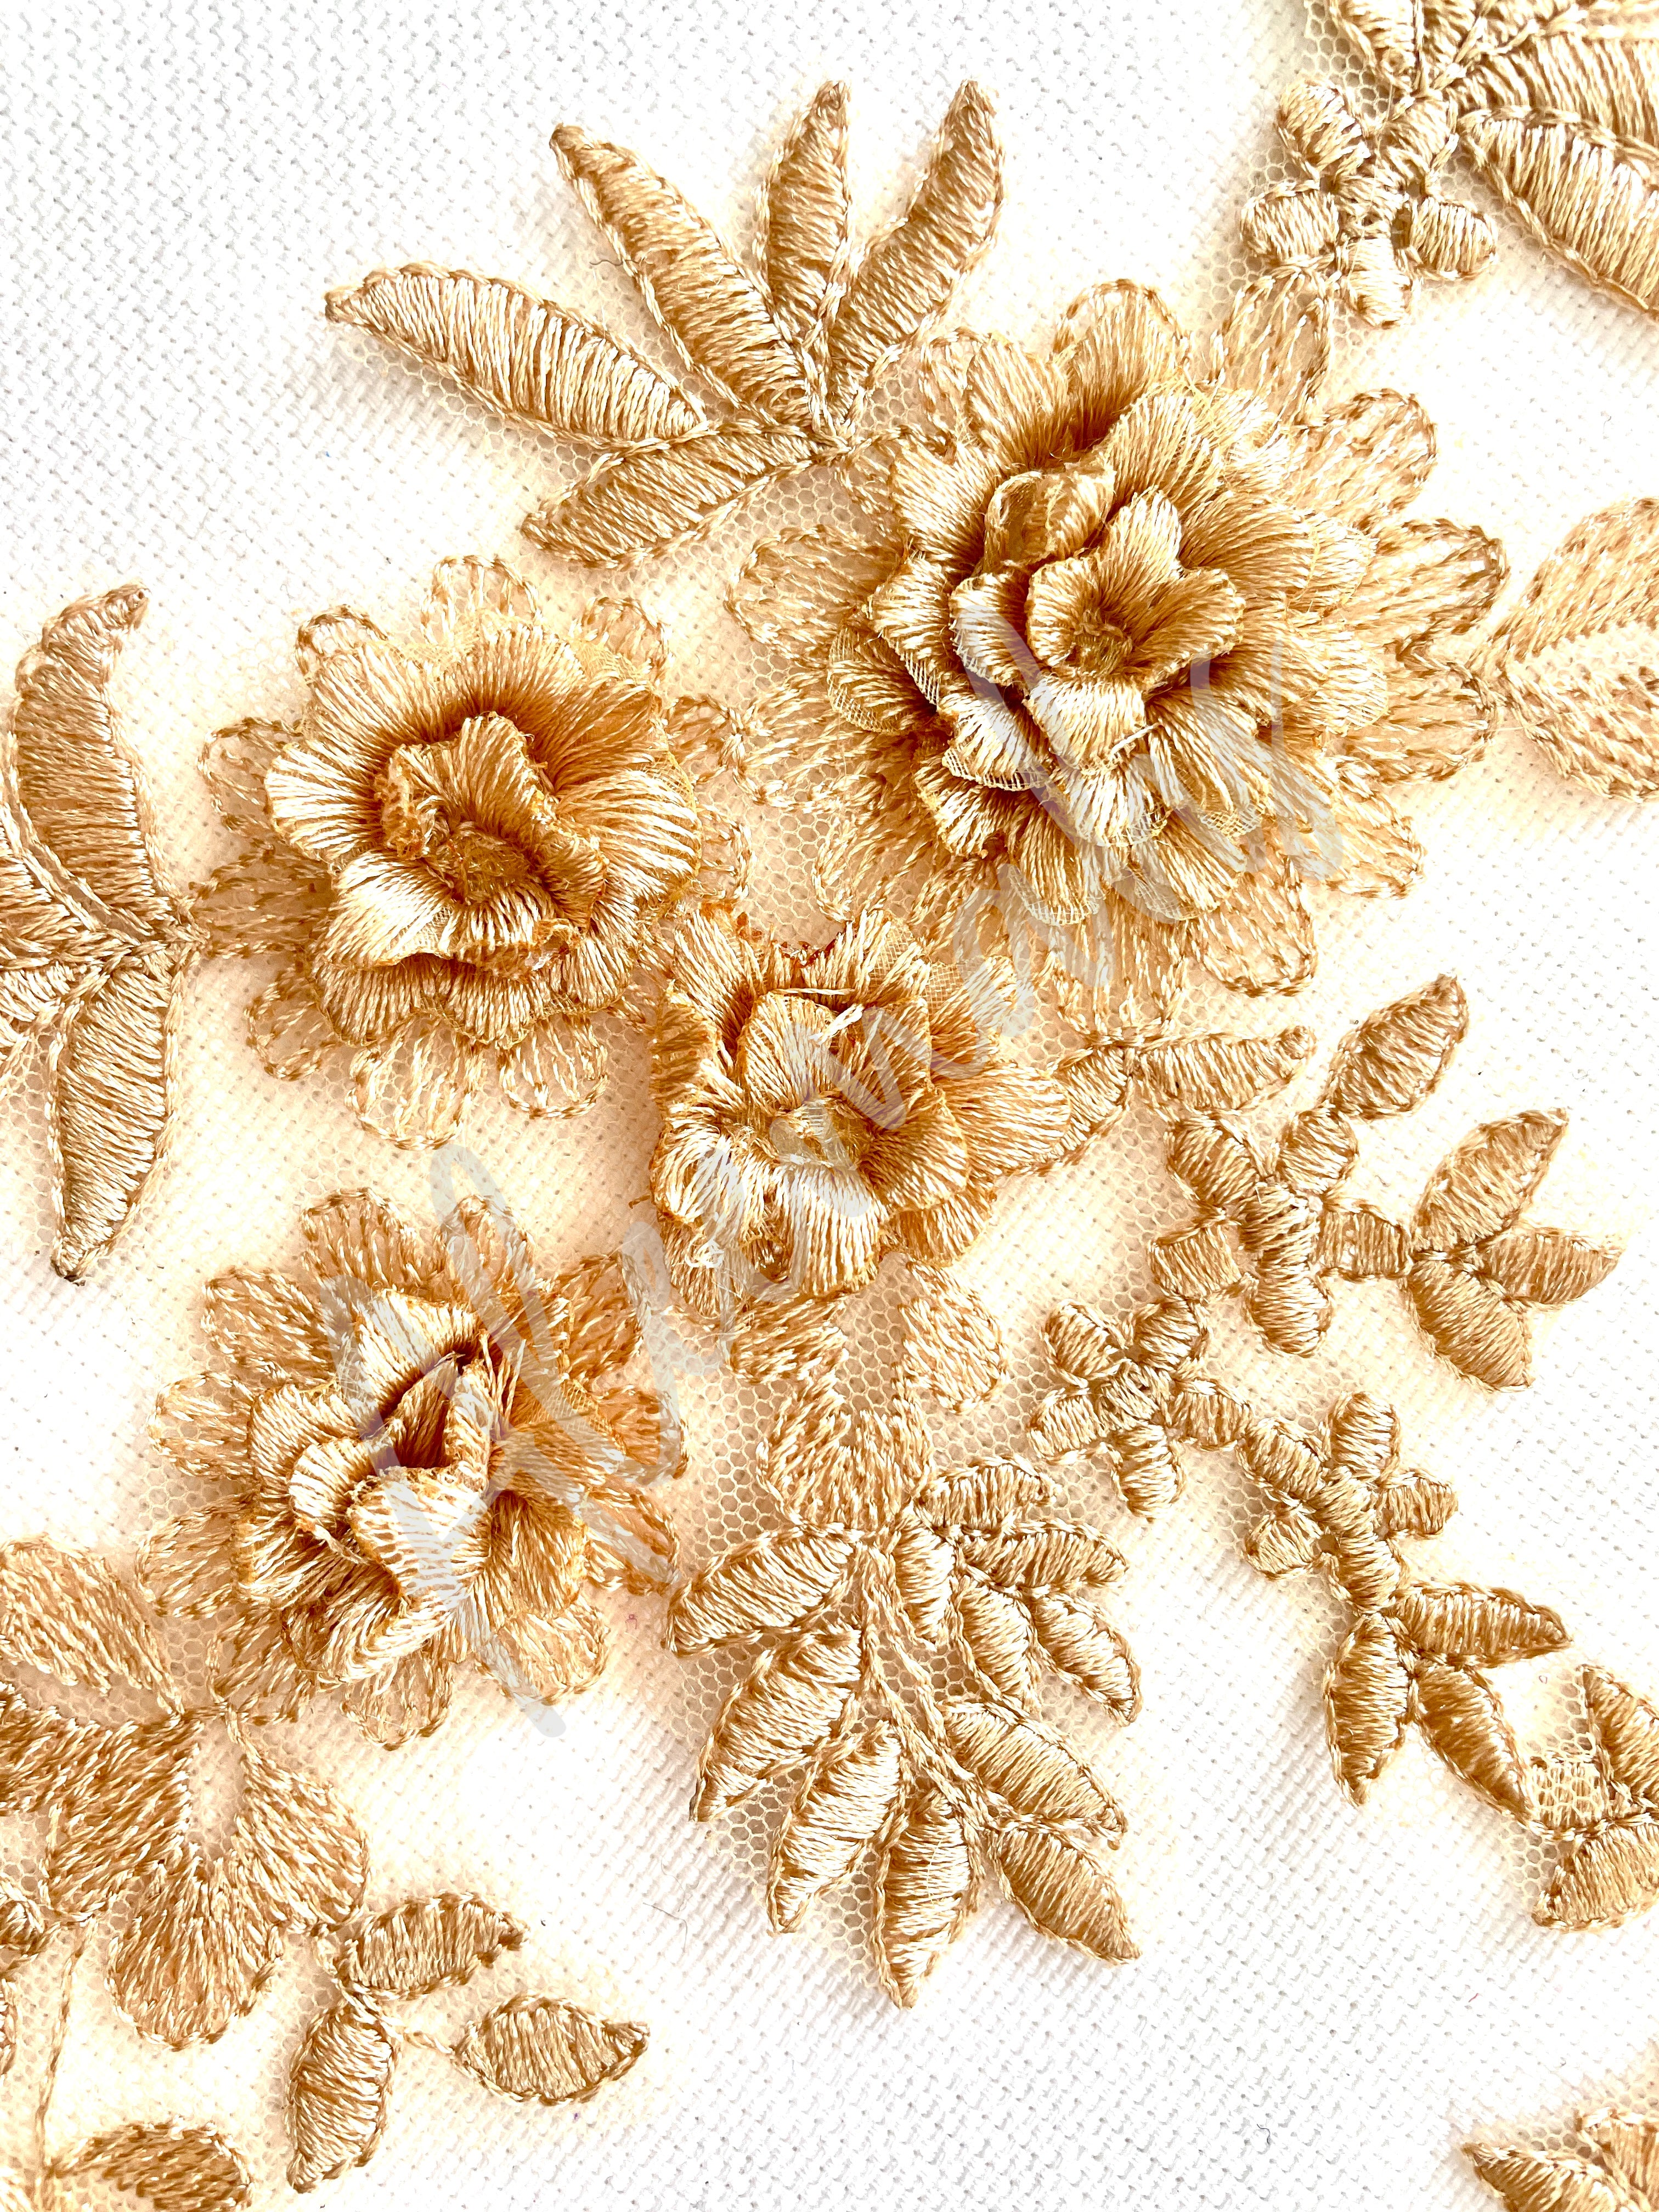 LA-033: 3D floral lace applique pair: Golden beige